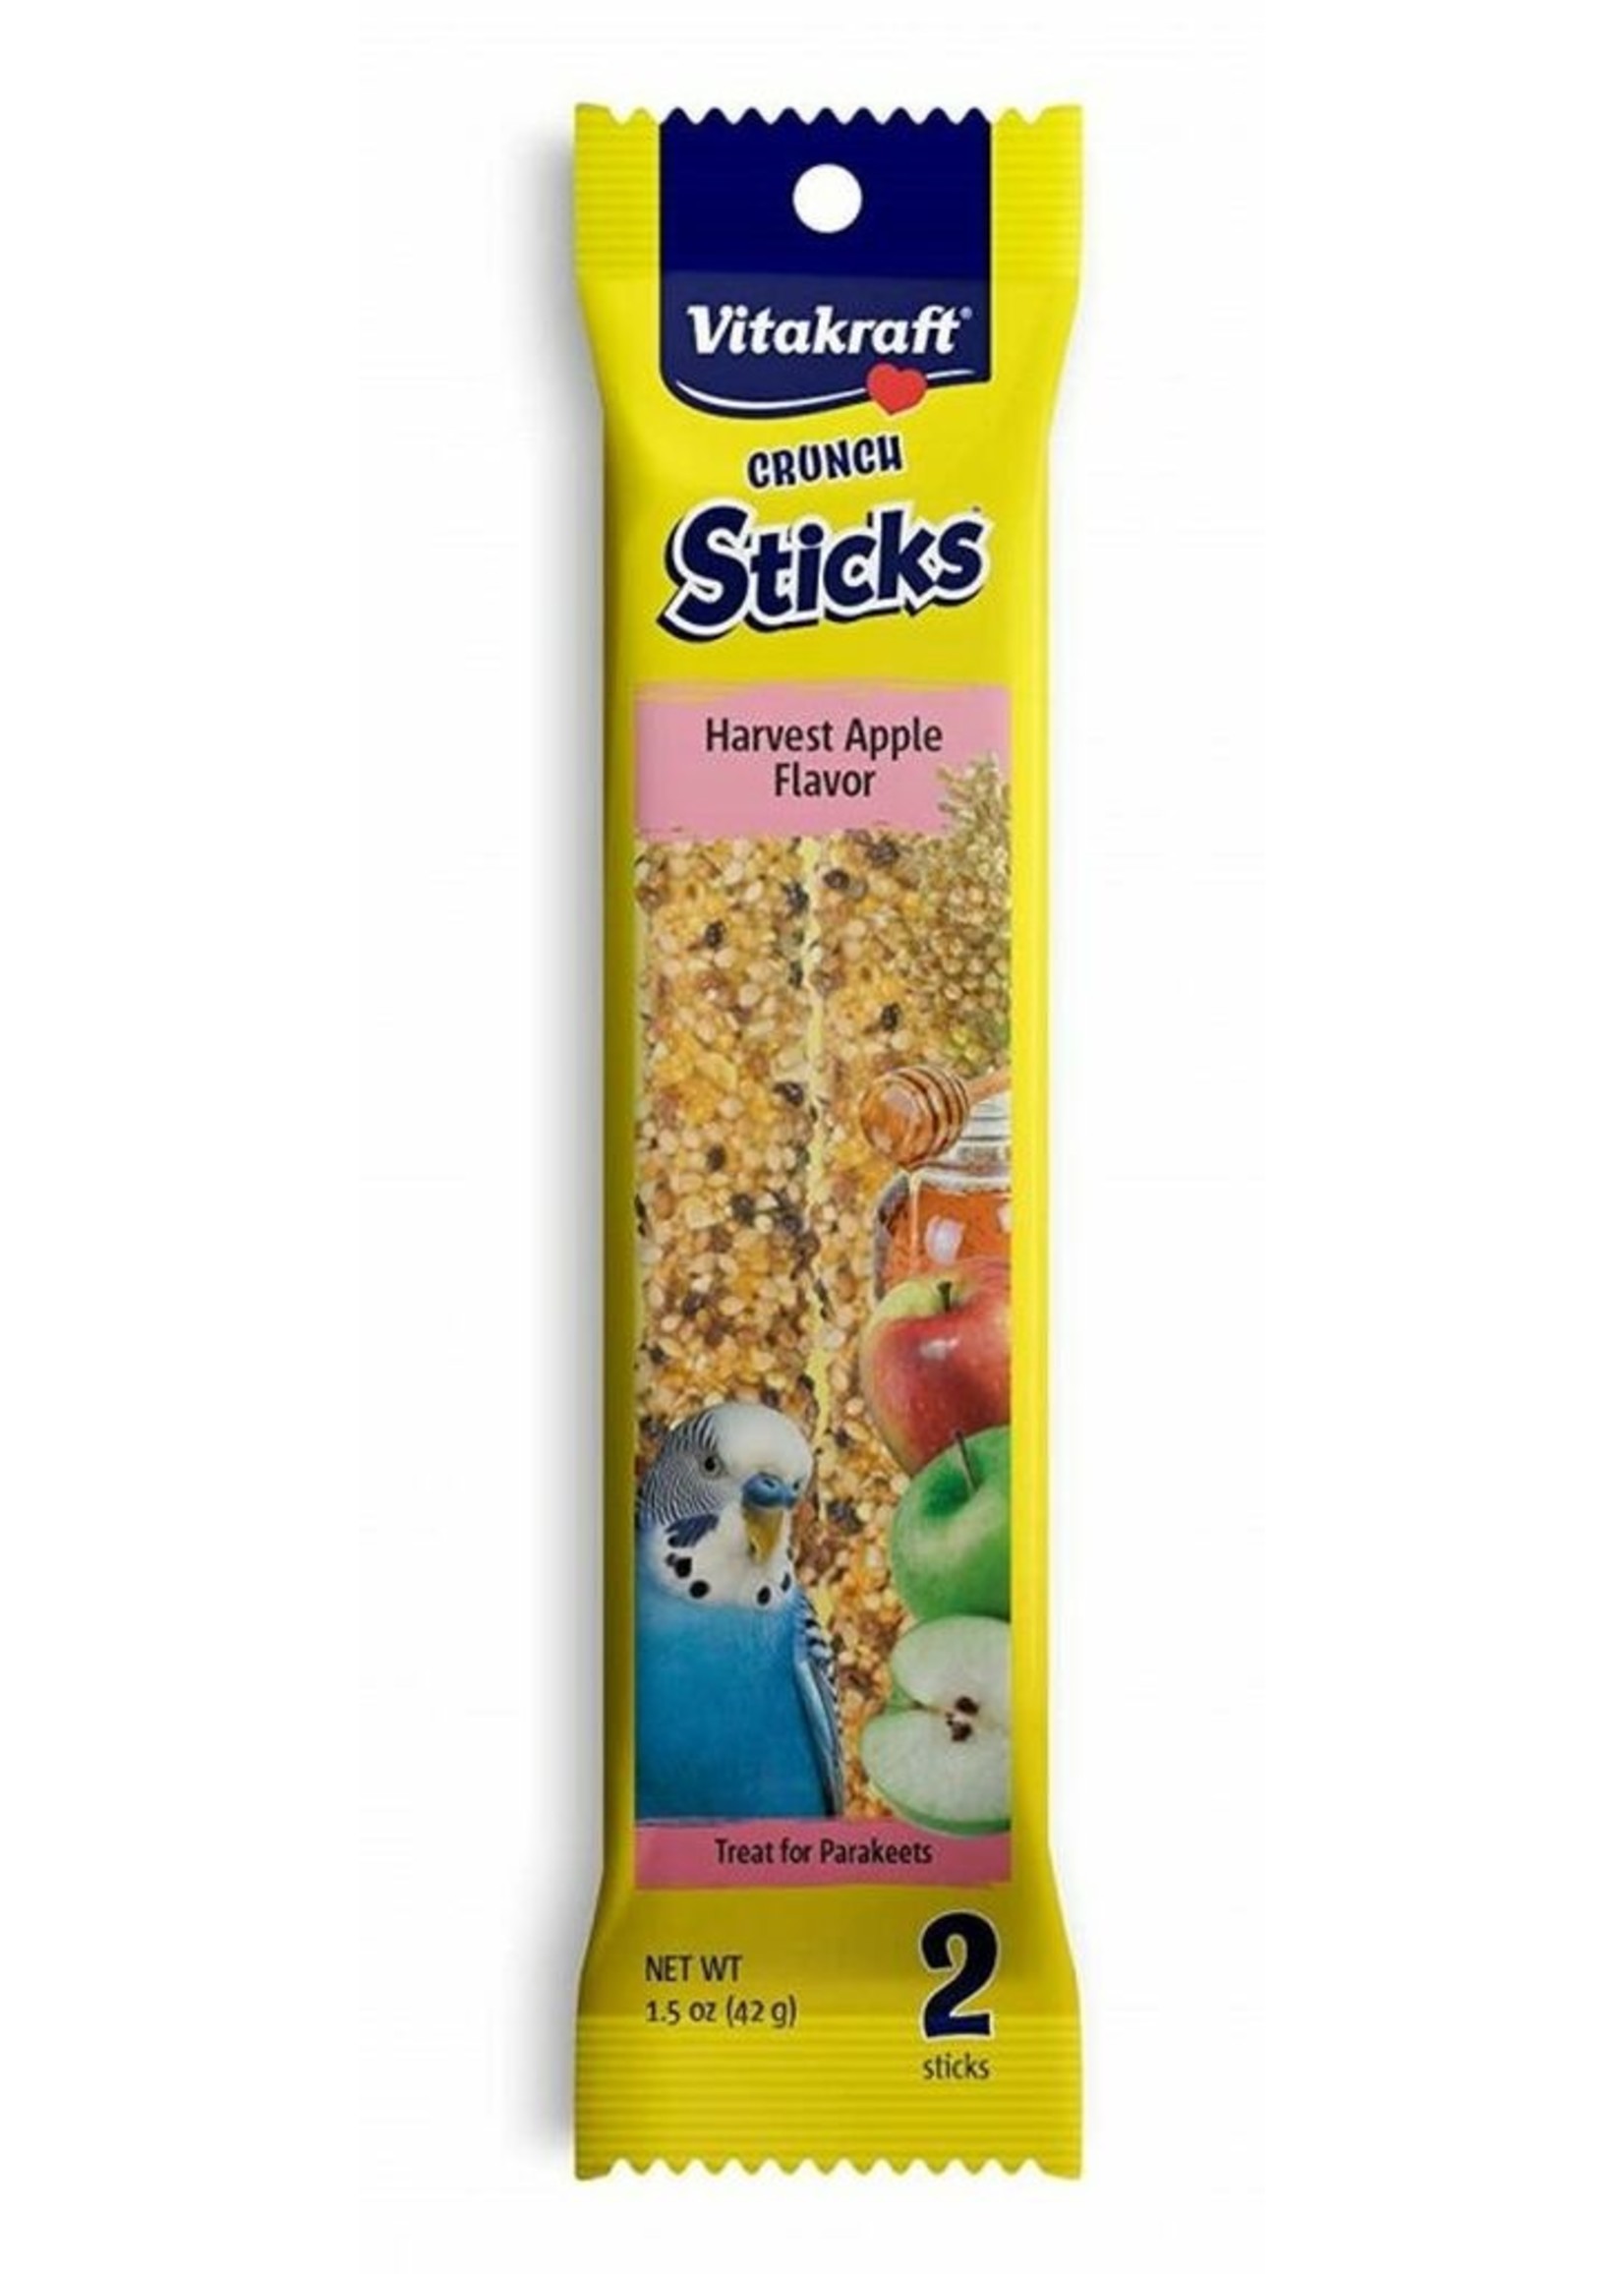 Sunseed/Vitakraft Vitakraft Parakeet Crunch Sticks, Harvest Apple Flavour 2/pk